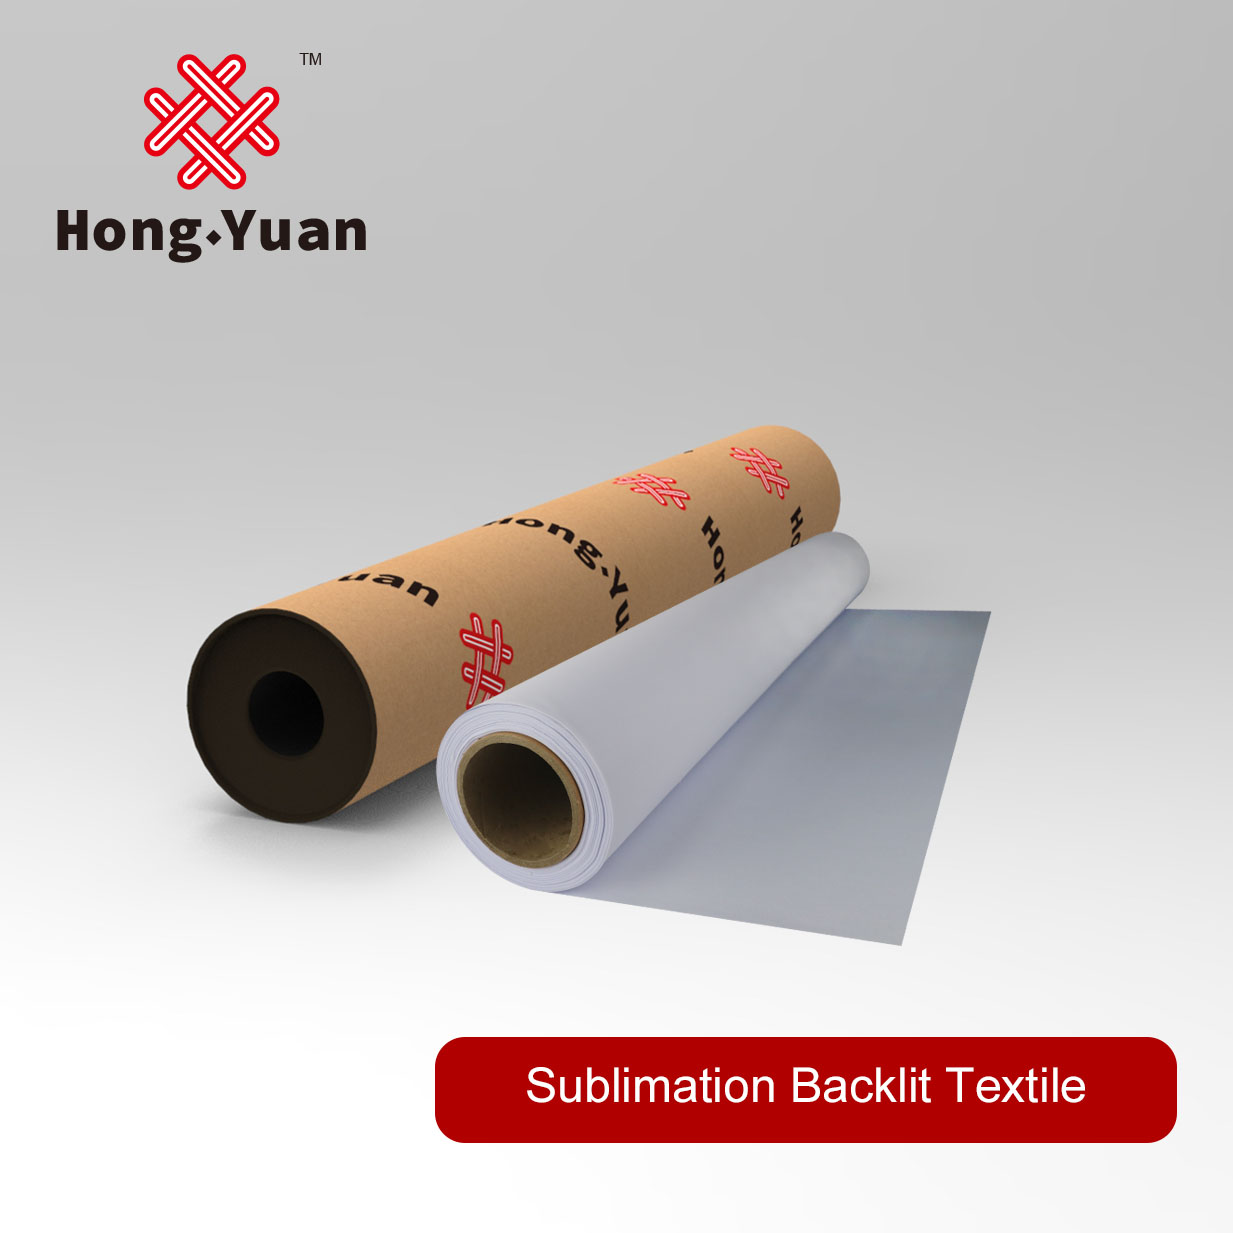 Sublimation Backlit Textile SBL200